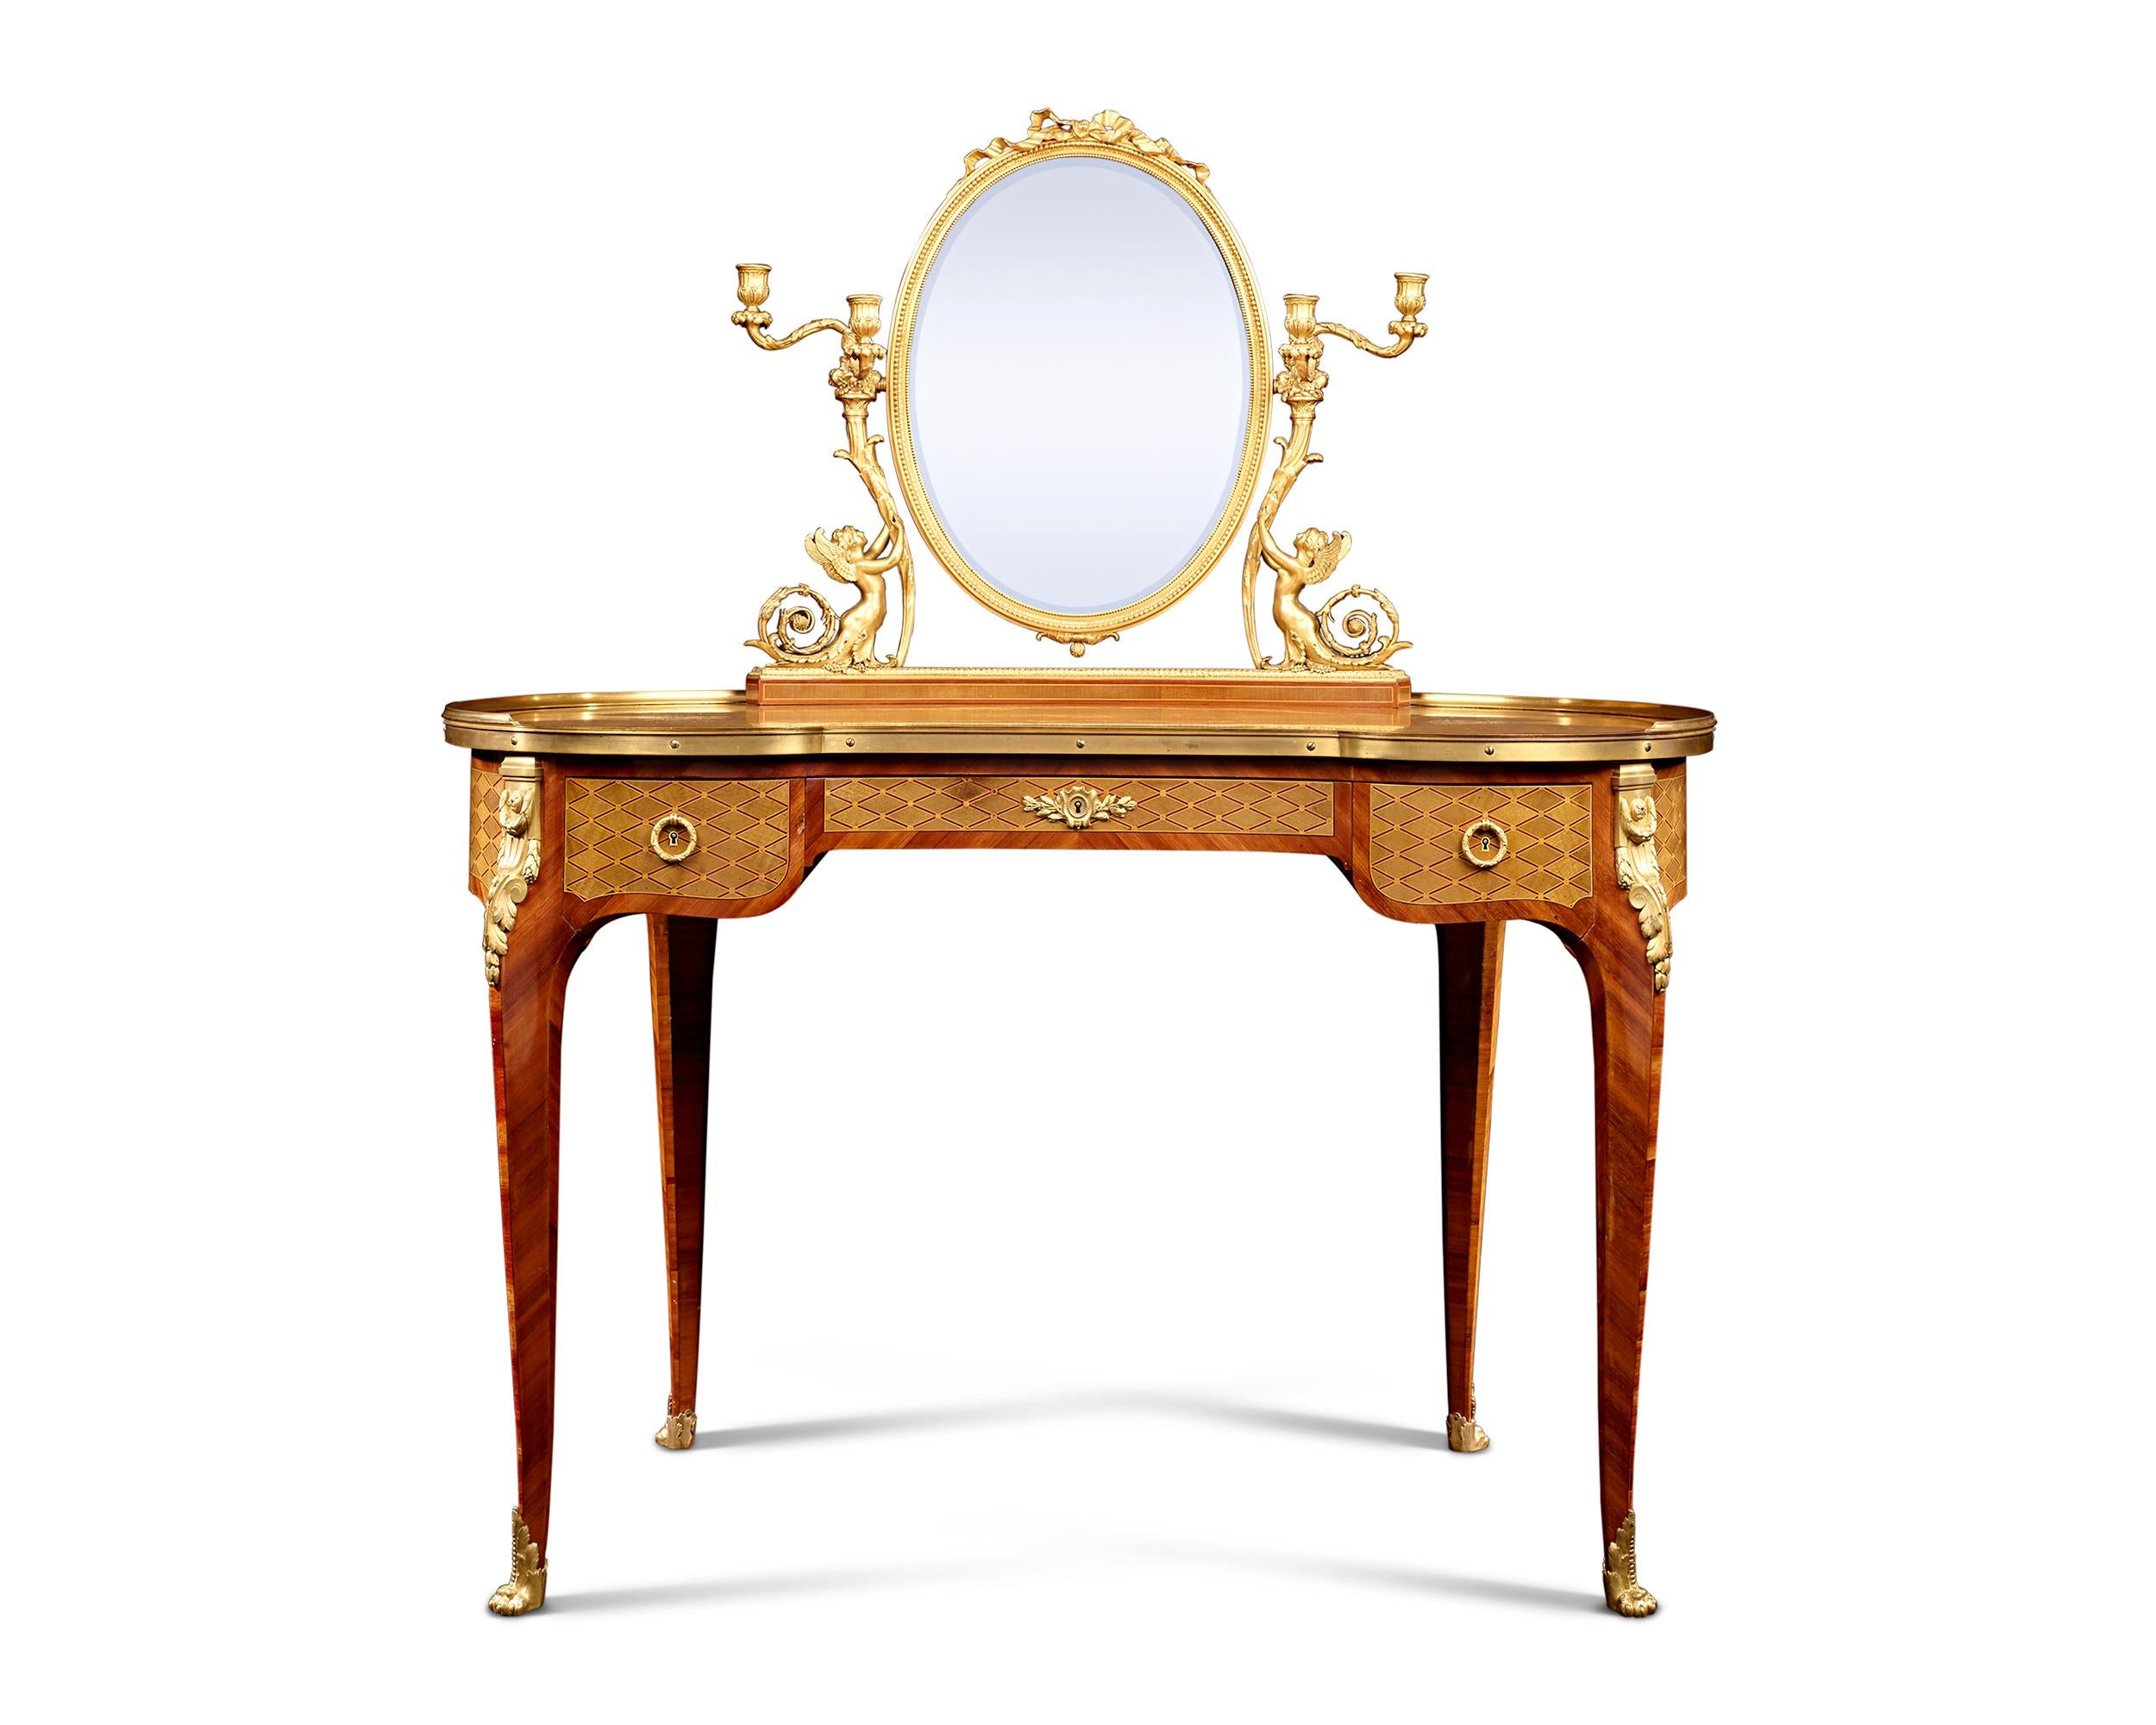 Eloquente Intarsien und eine getreue Interpretation des Louis XVI-Geschmacks kennzeichnen diese schöne Frisierkommode von Paul Sormani aus dem 19. Ein anmutiger ovaler Schminkspiegel krönt dieses tadellose Design, das mit einem Ormolu-Rahmen aus